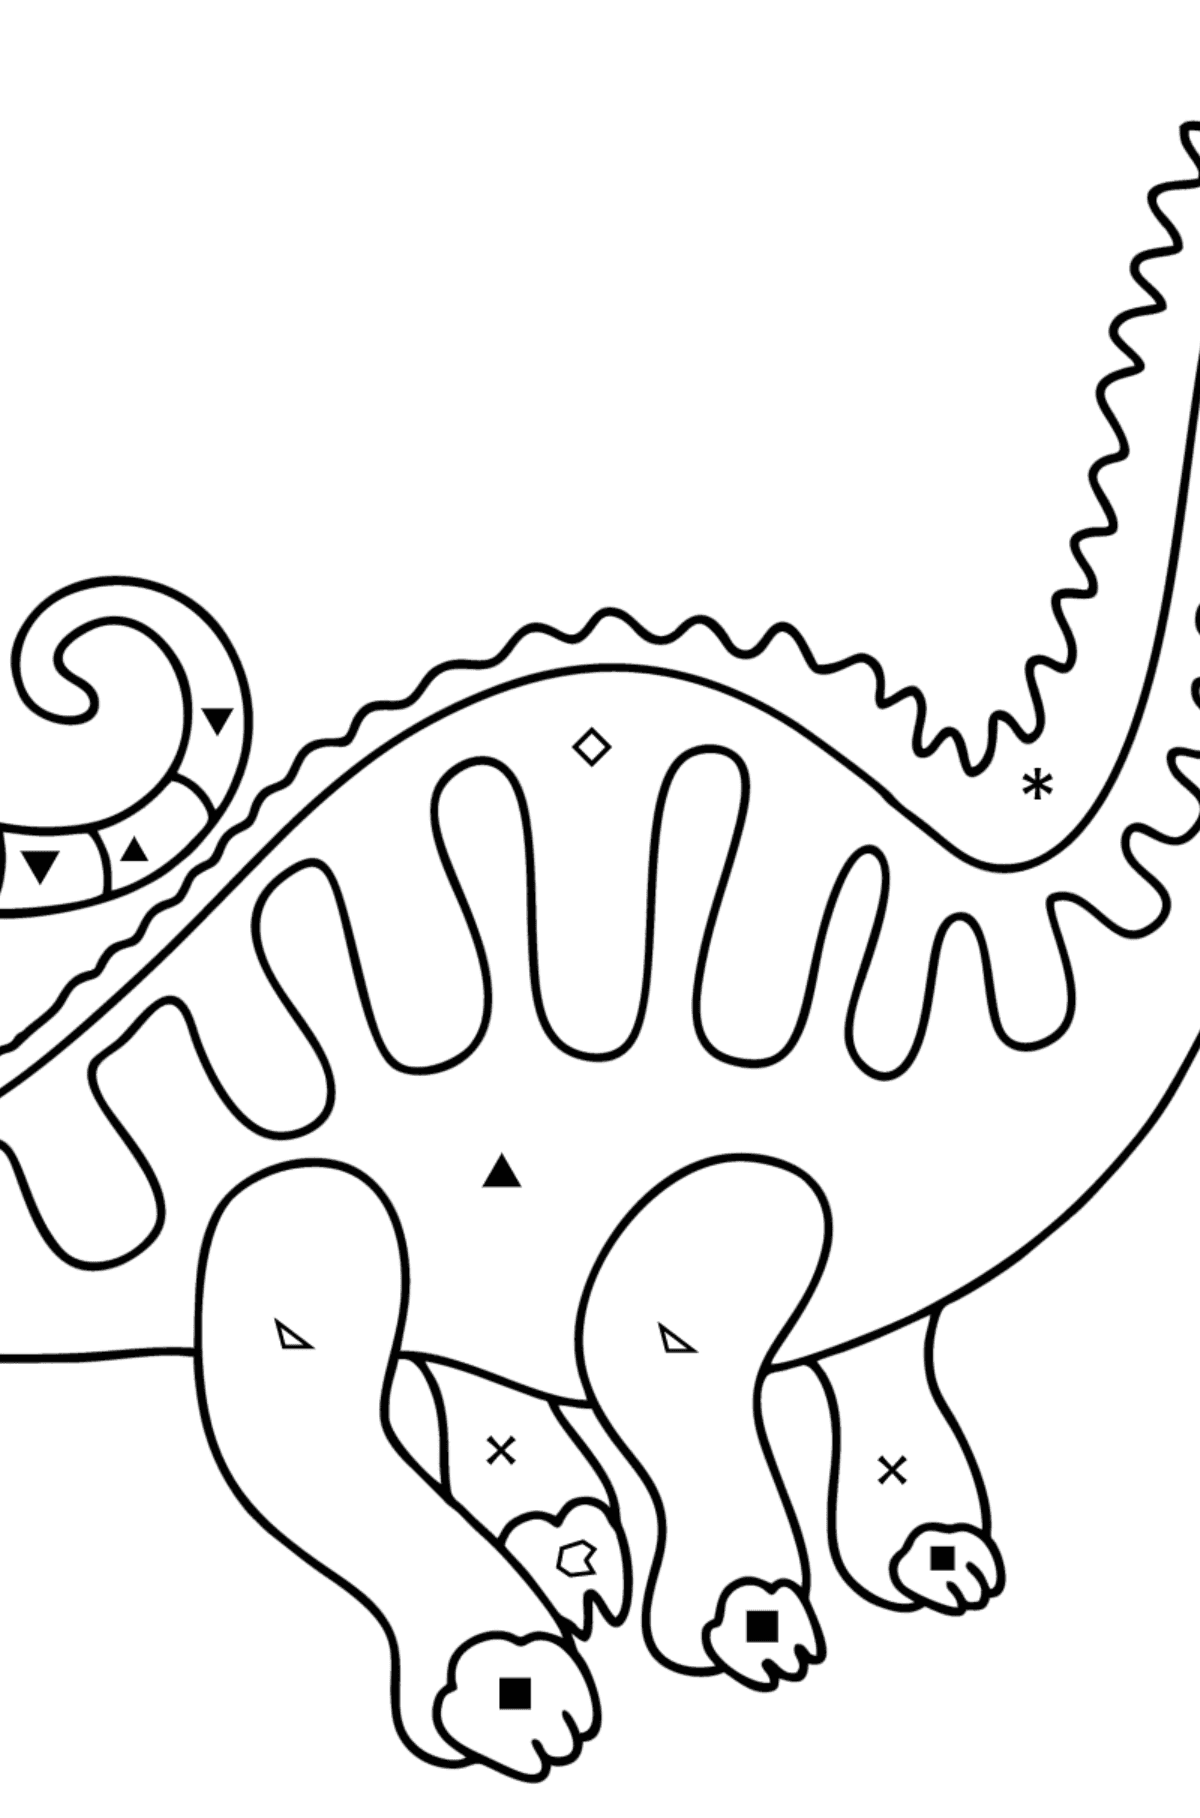 Dibujo de Apatosaurio para colorear - Colorear por Símbolos para Niños